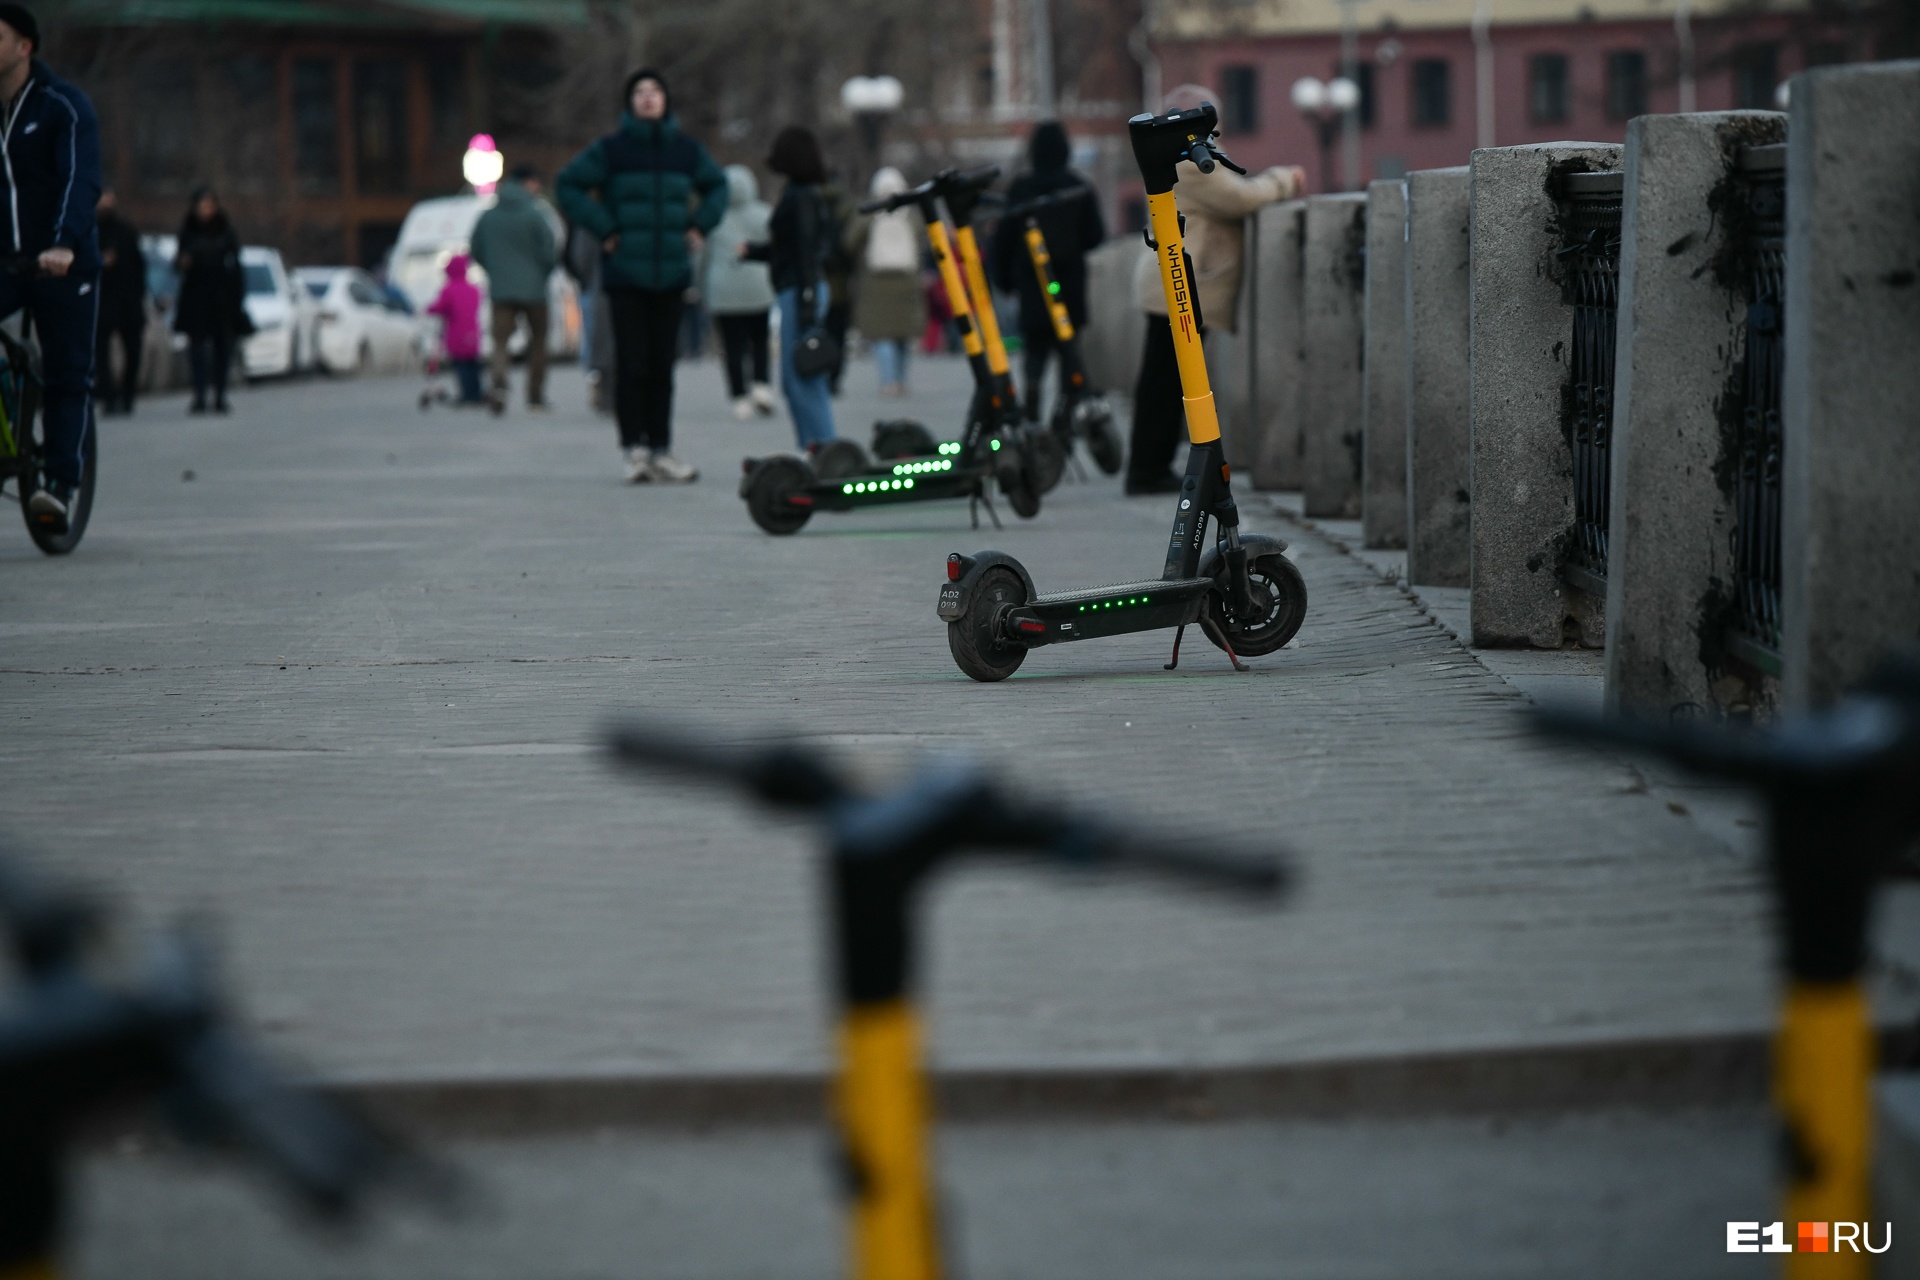 «Микромобильный хаос»: объясняем, почему Екатеринбург превращается в парковочный ад с электросамокатами